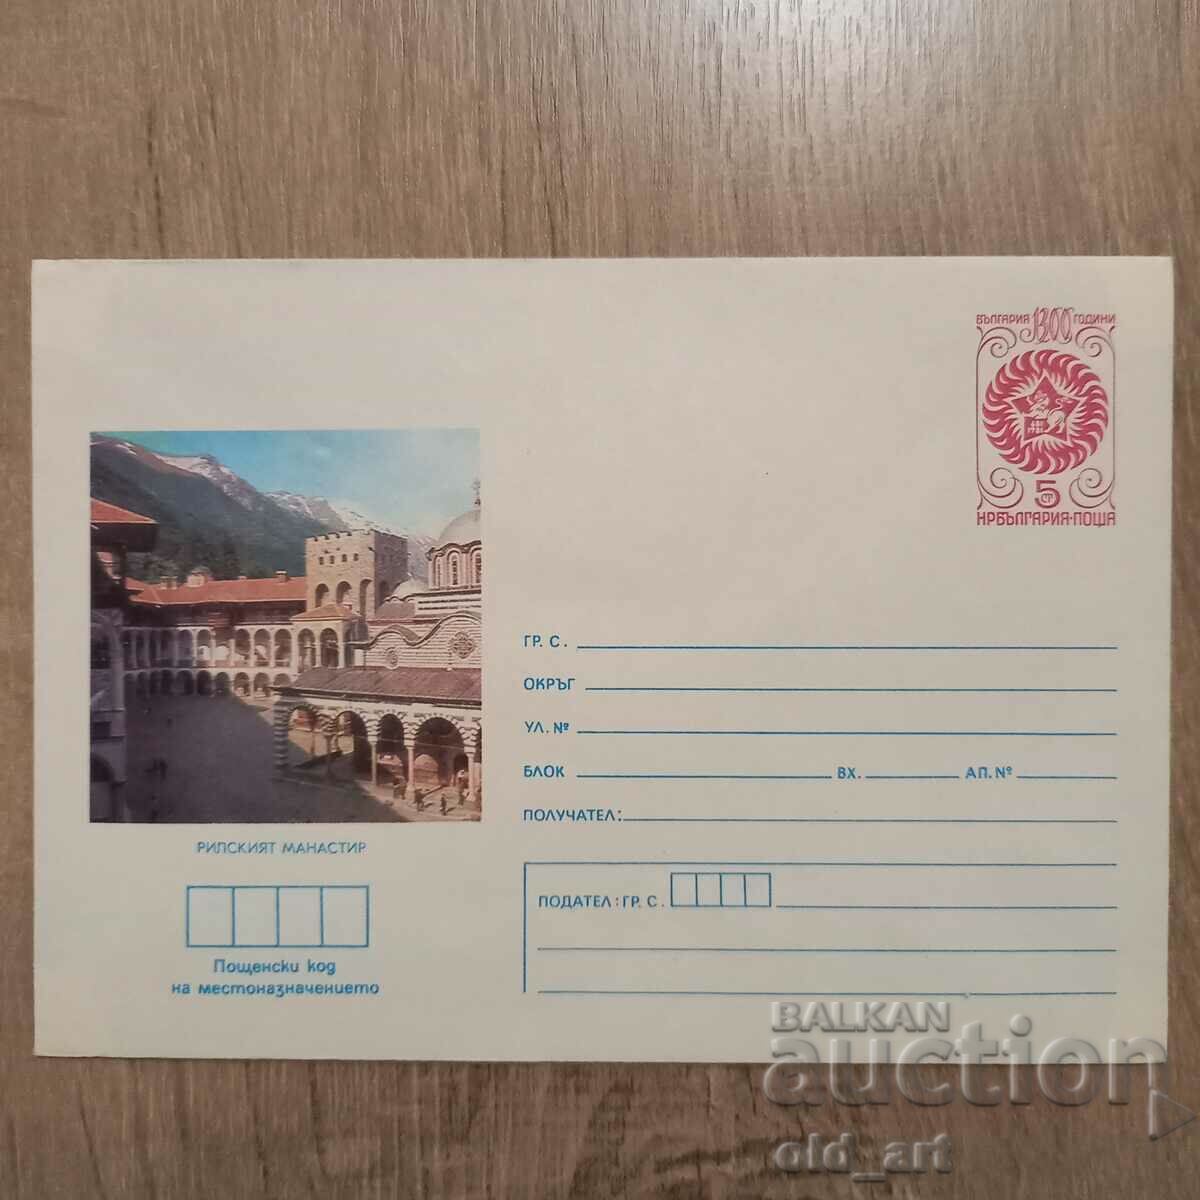 Plic postal - Manastirea Rila